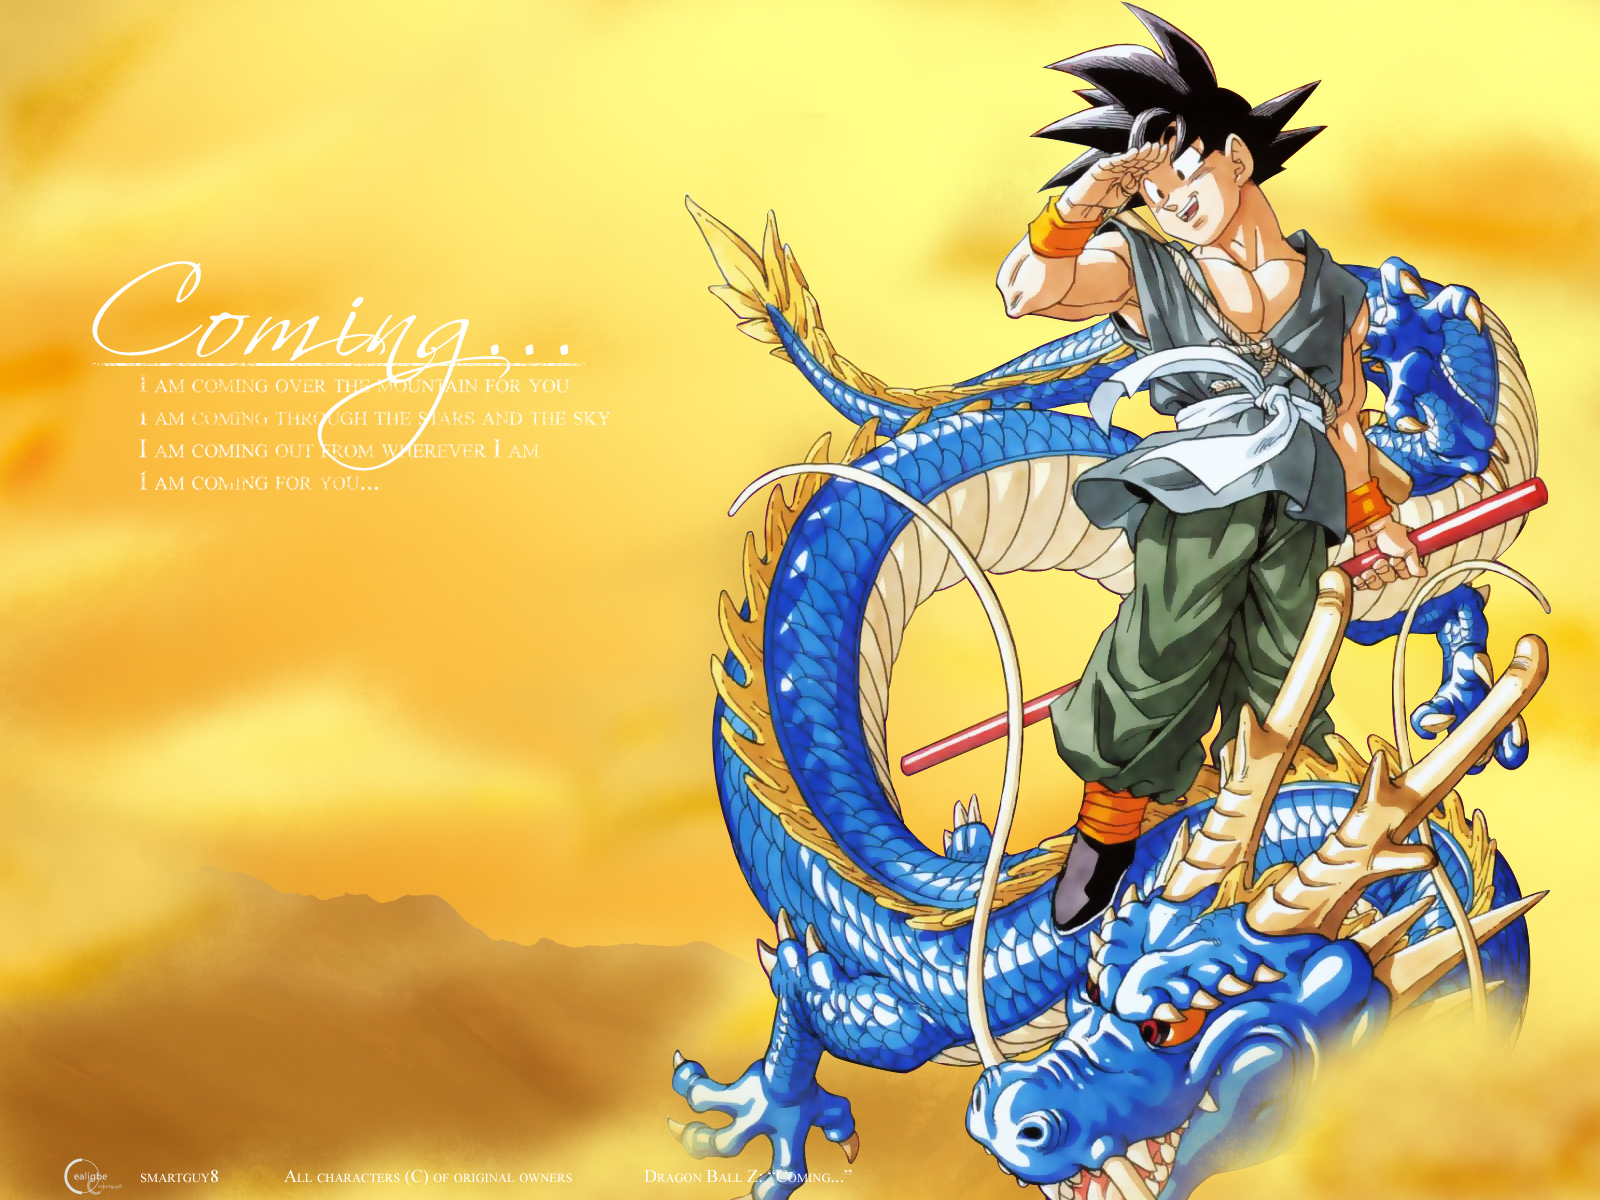 47+] Goku HD Wallpaper - WallpaperSafari